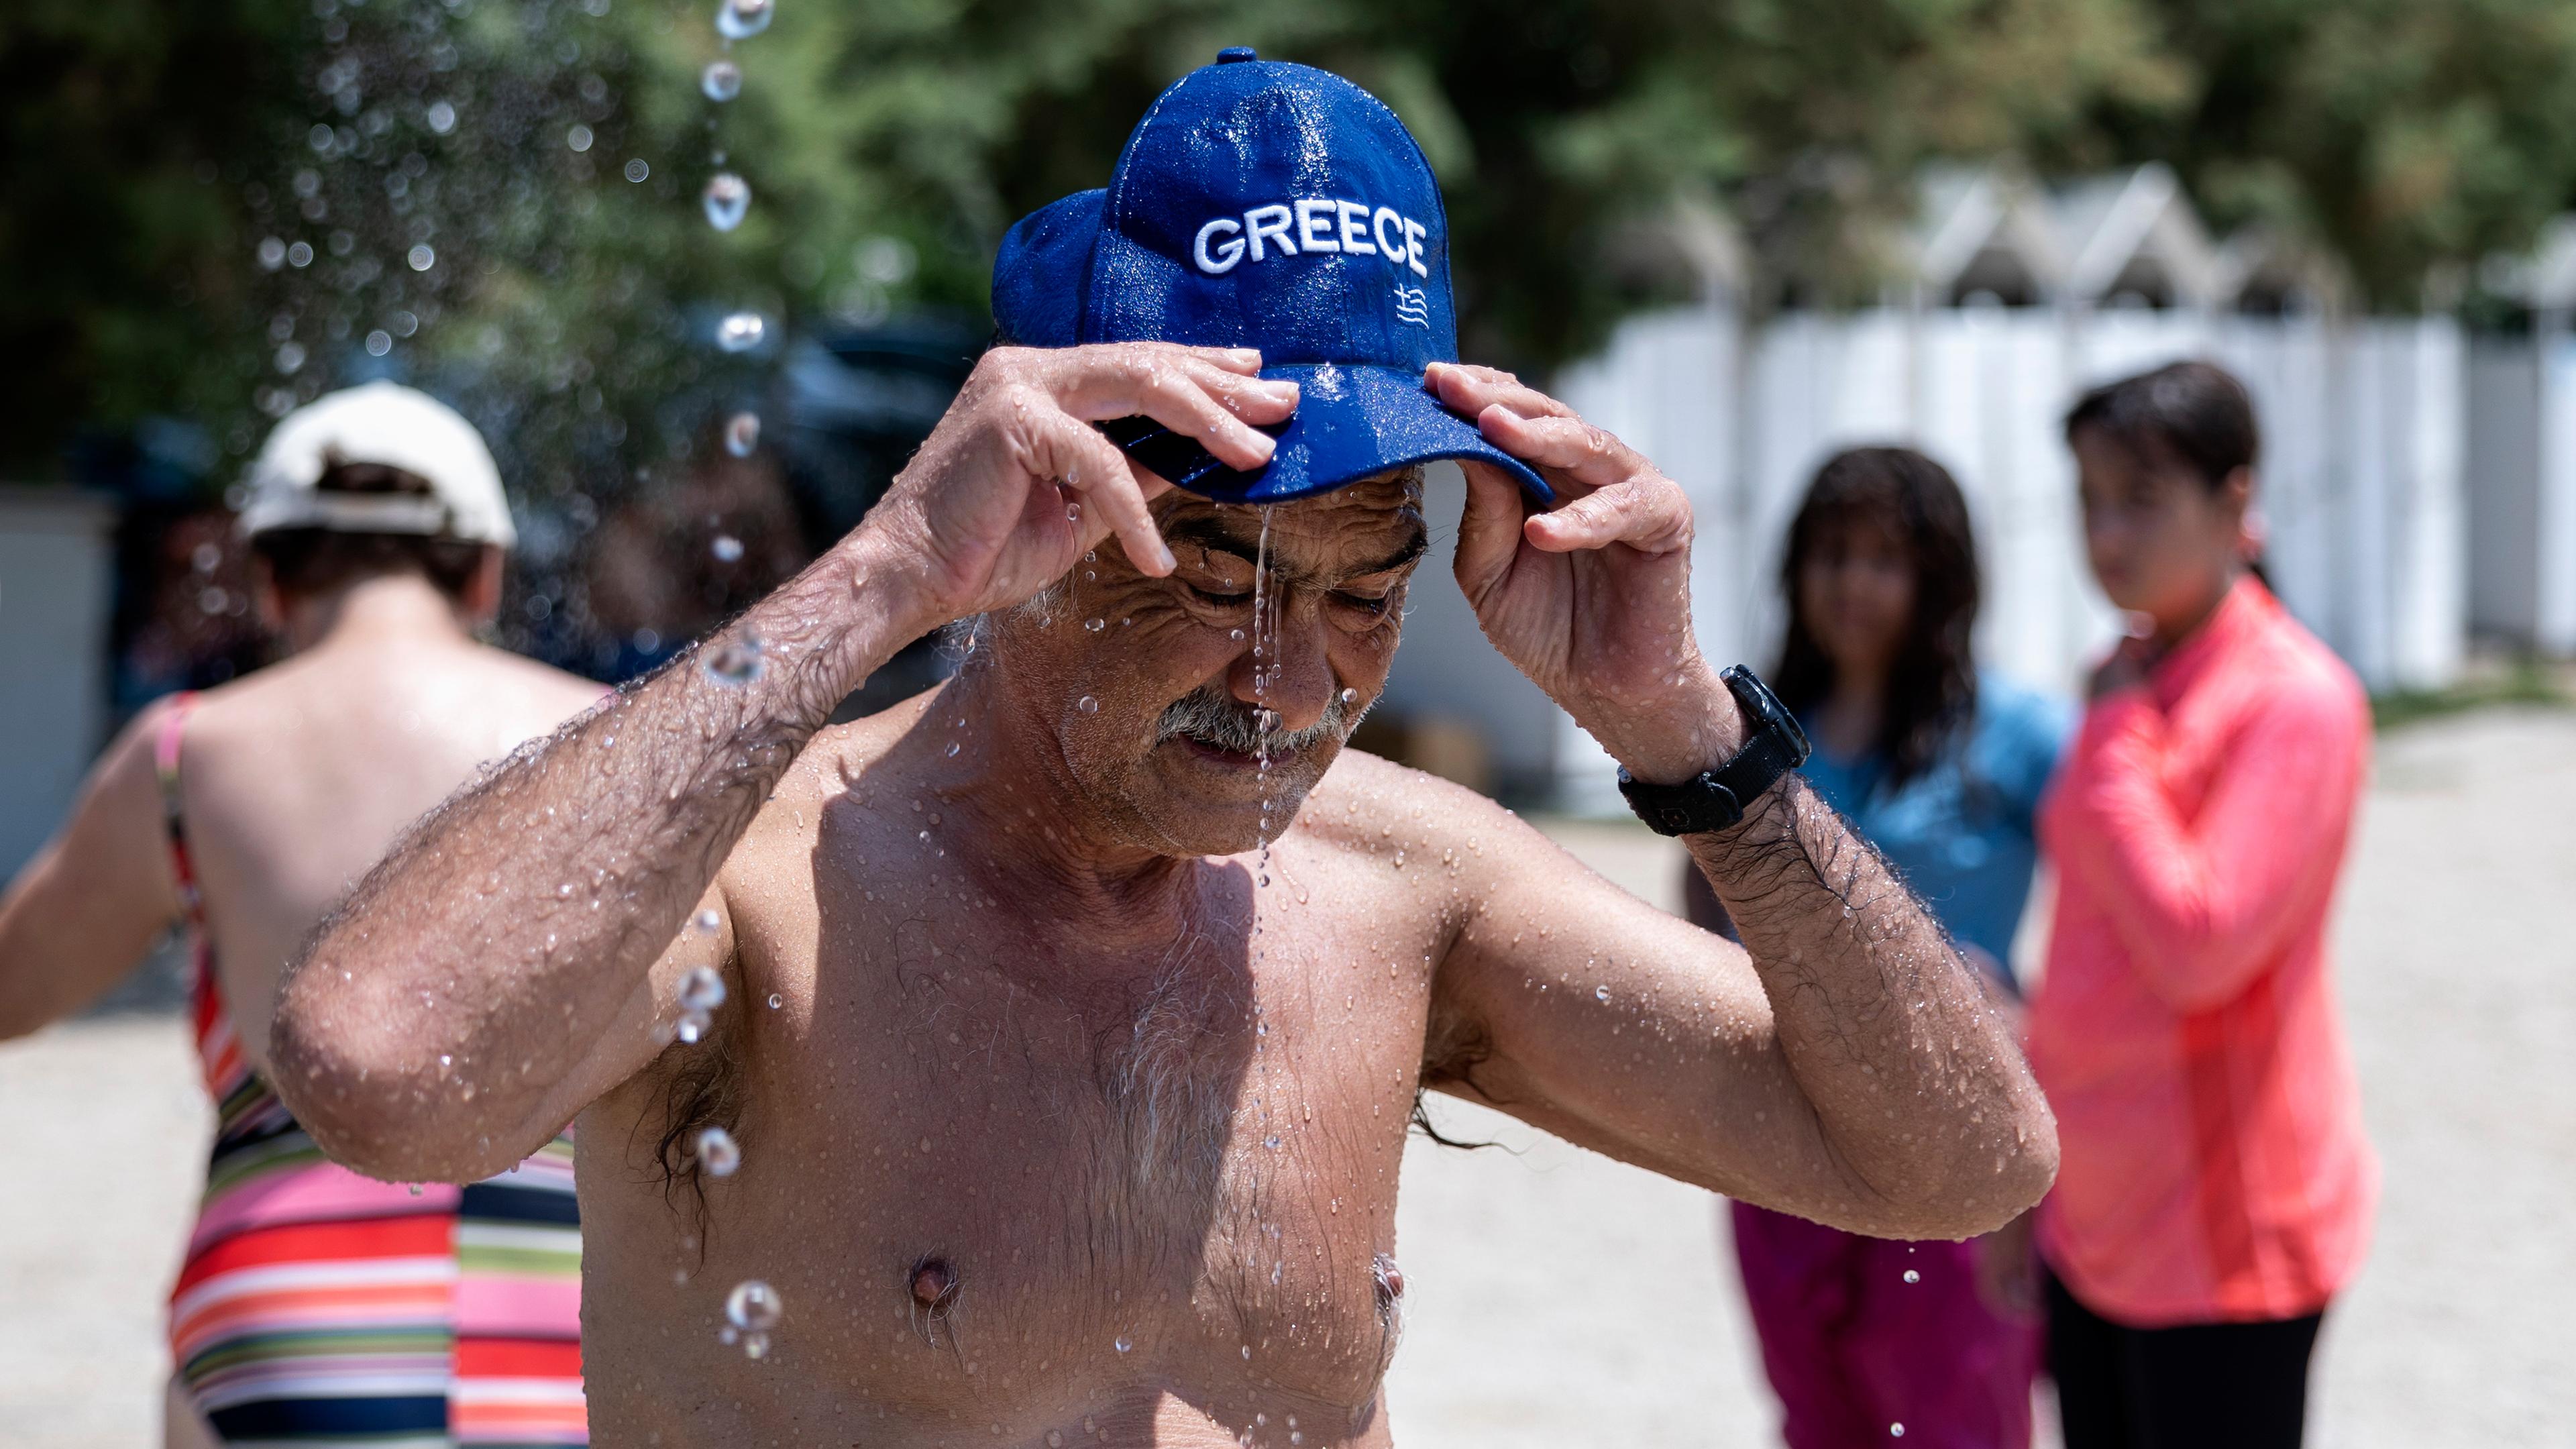 Mann kühlt sich ab wegen hoher Hitze in Griechenland, Athen